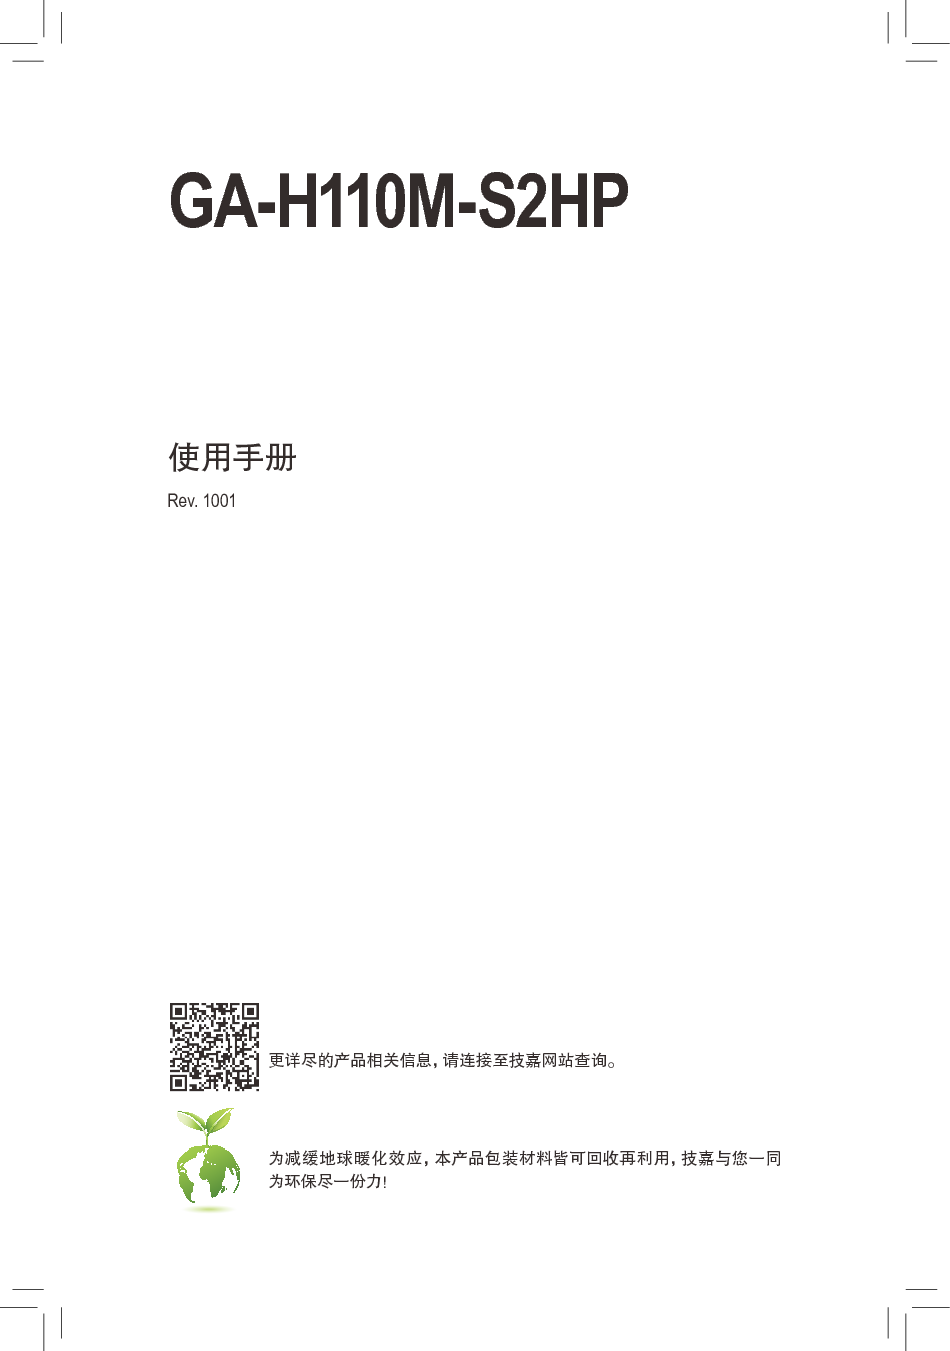 技嘉 Gigabyte GA-H110M-S2HP 使用手册 封面